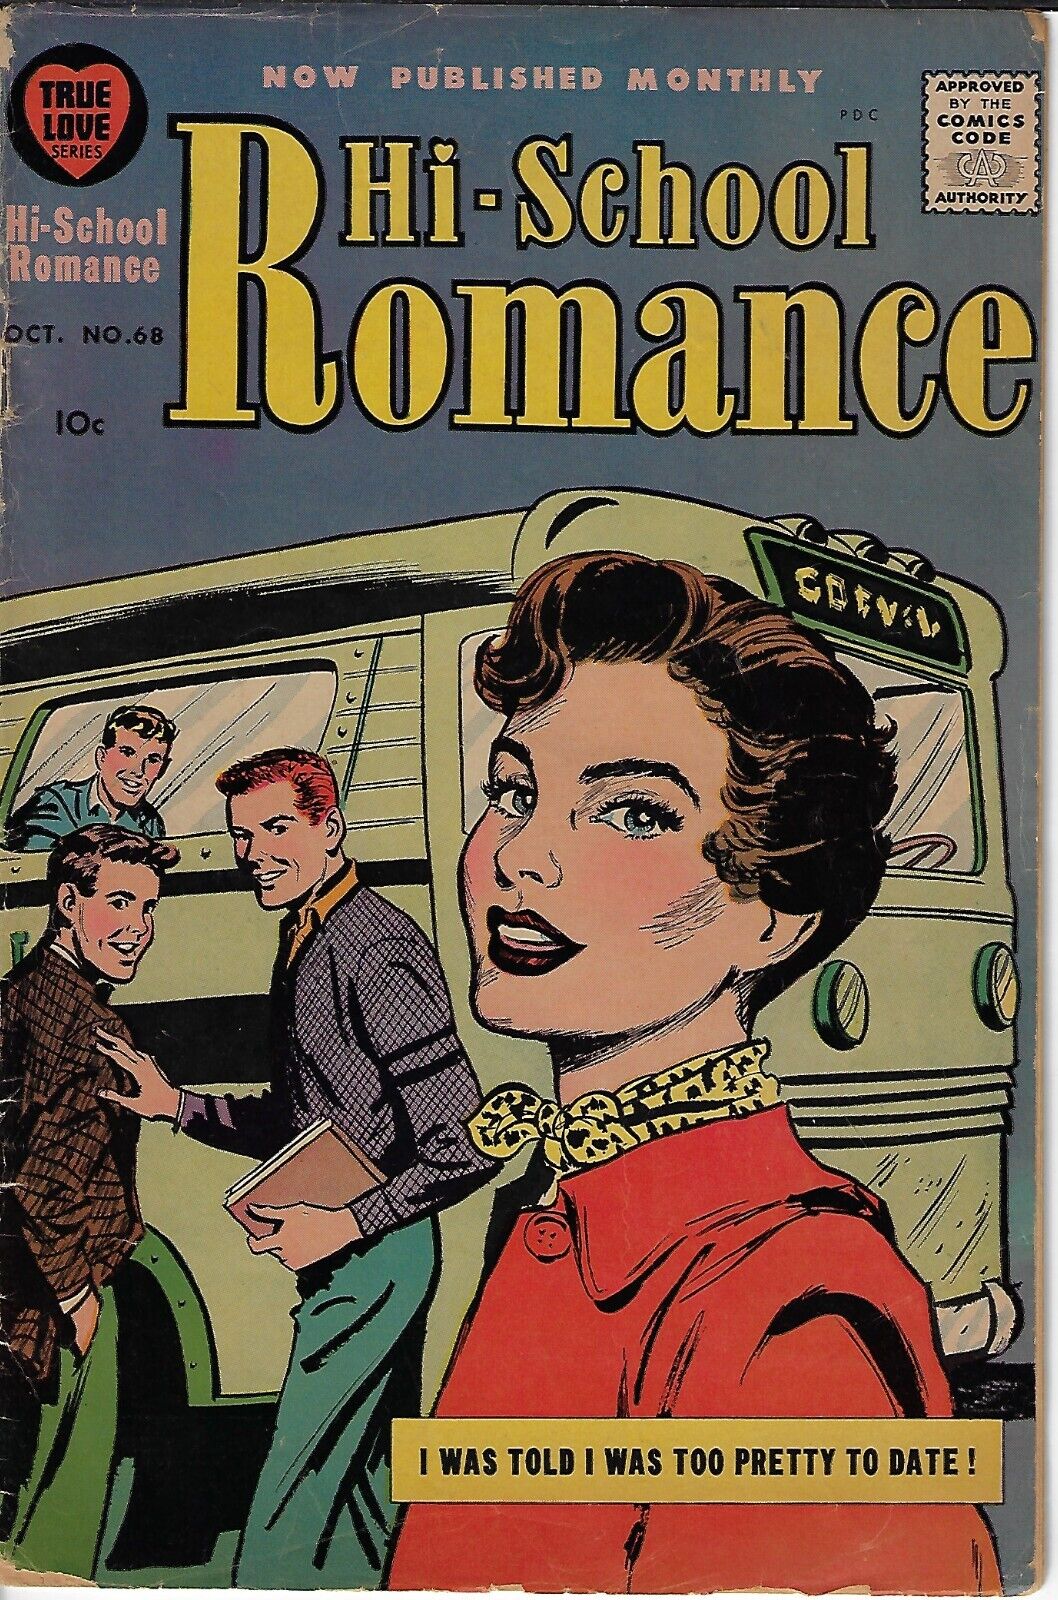 Hi-School Romance COMIC  OCT. #68 VG